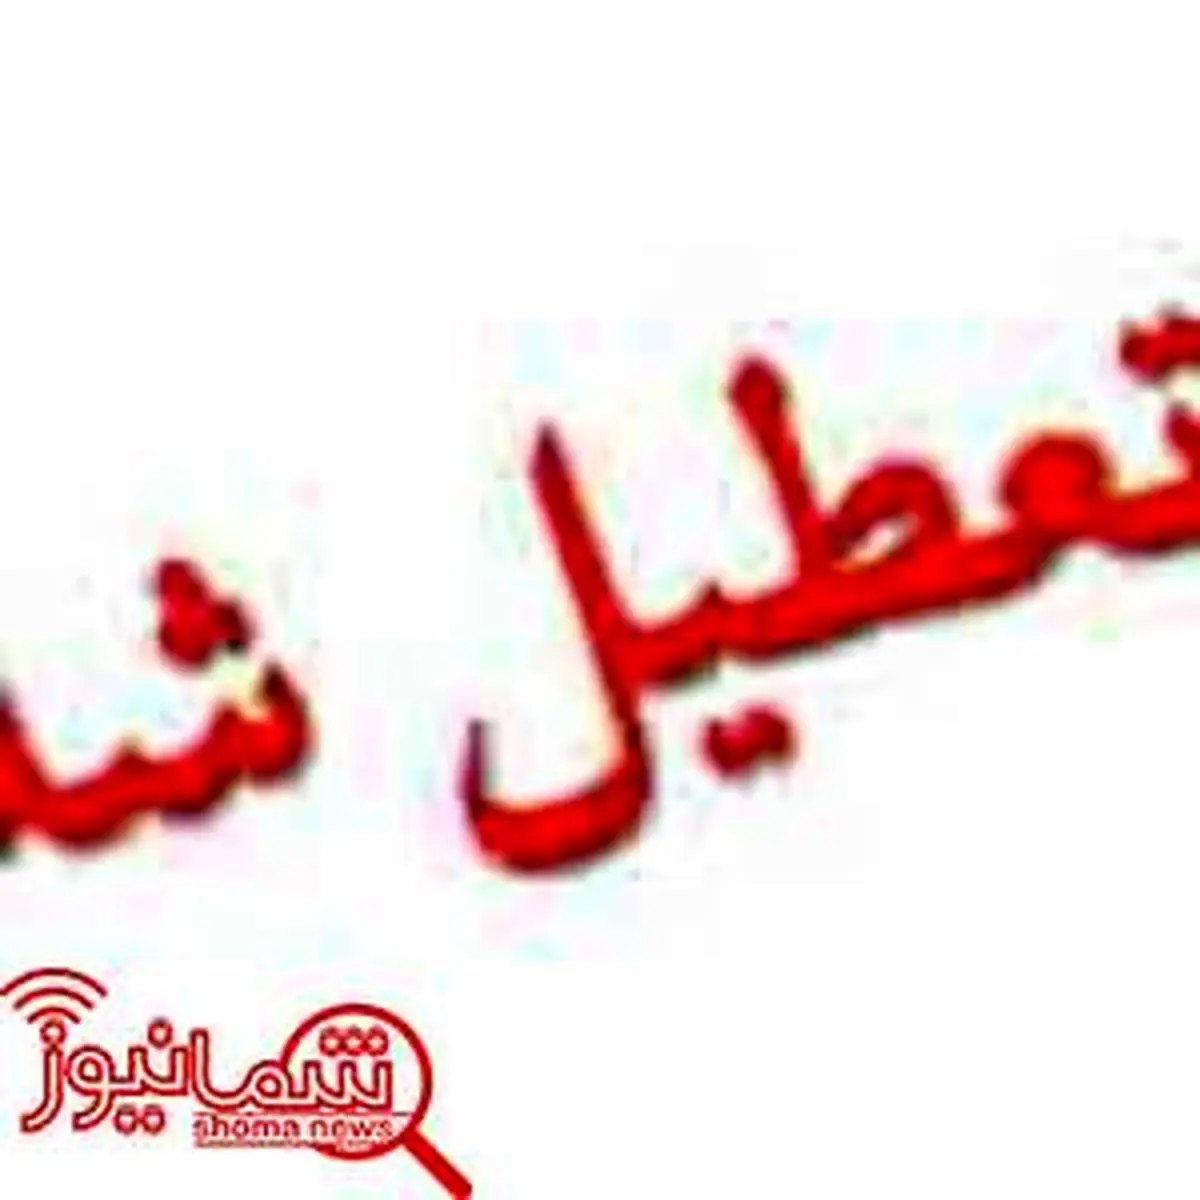 چهارشنبه در خوزستان تعطیل اعلام شد